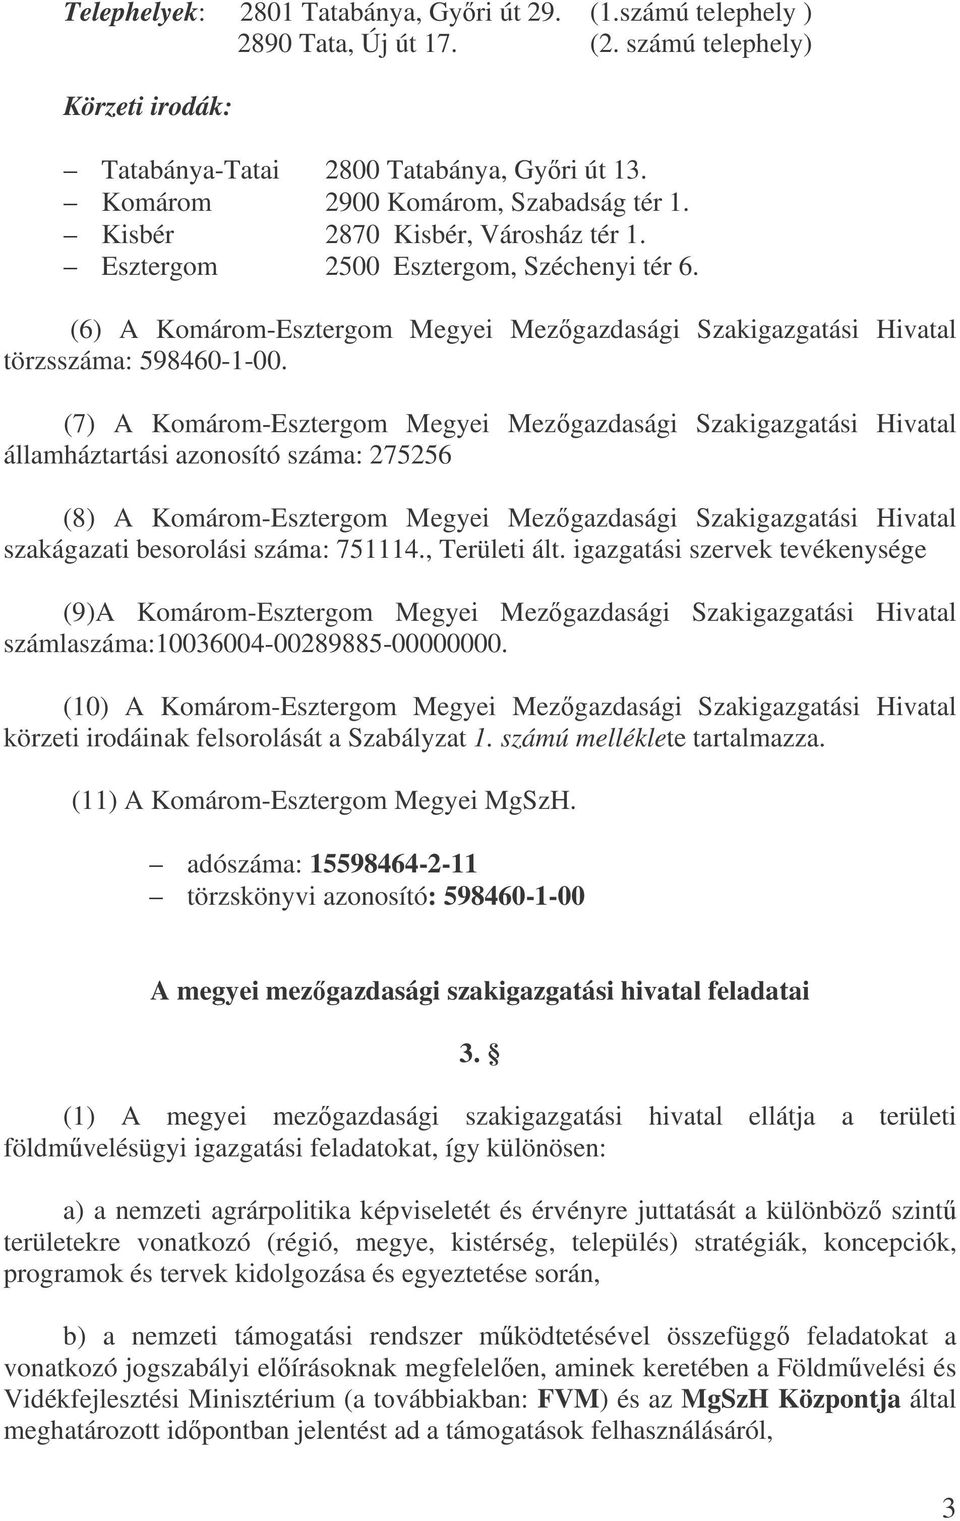 (6) A Komárom-Esztergom Megyei Mezgazdasági Szakigazgatási Hivatal törzsszáma: 598460-1-00.